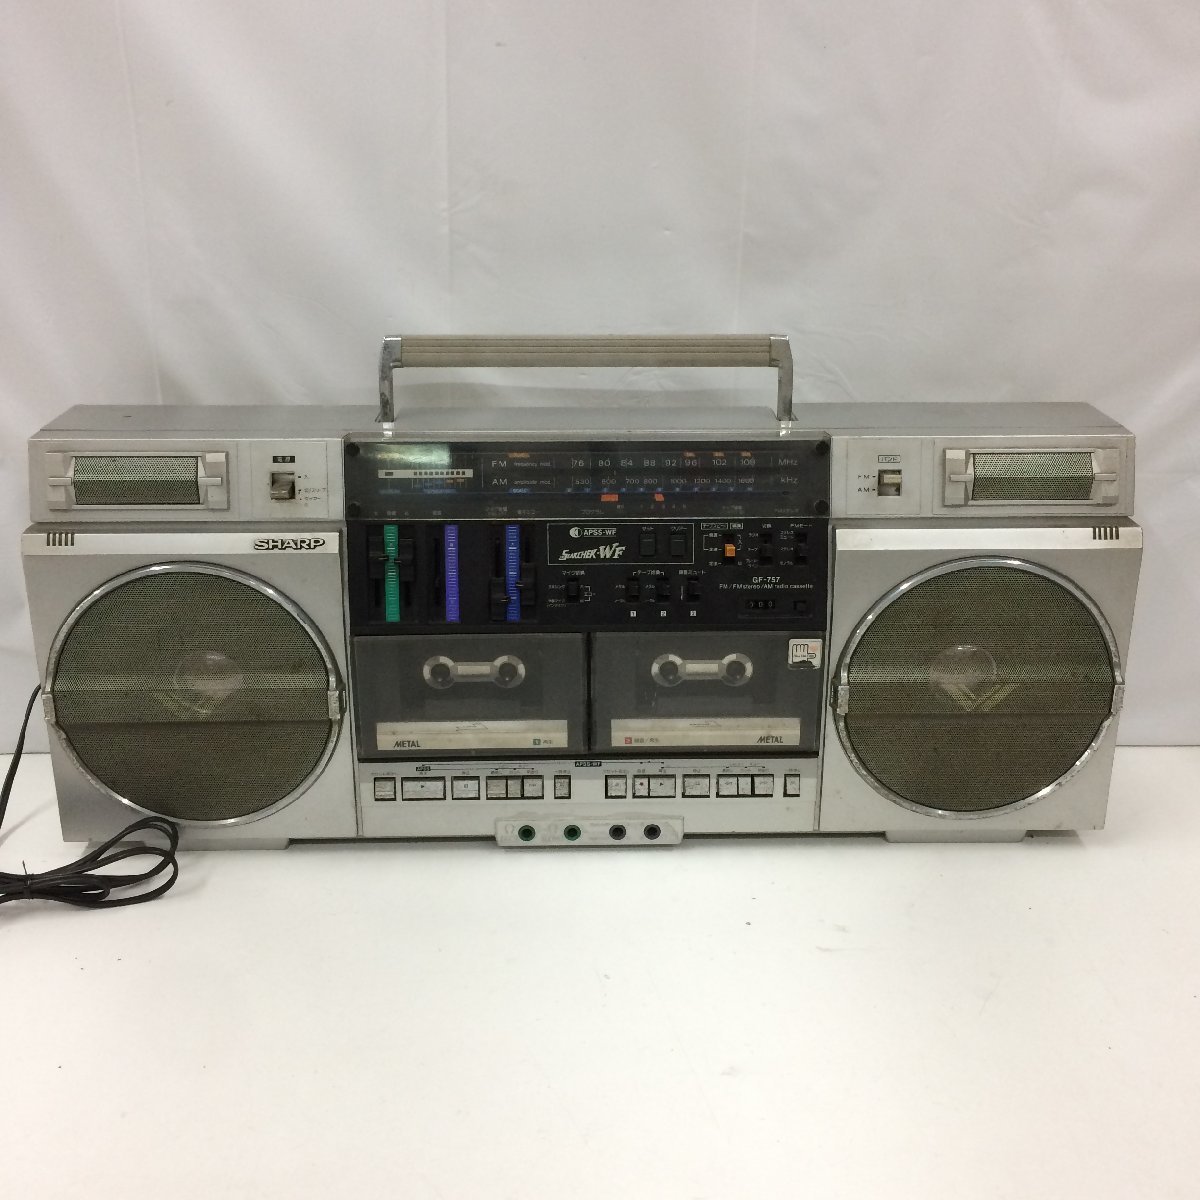 ソニーSharp GF-757 radio cassette